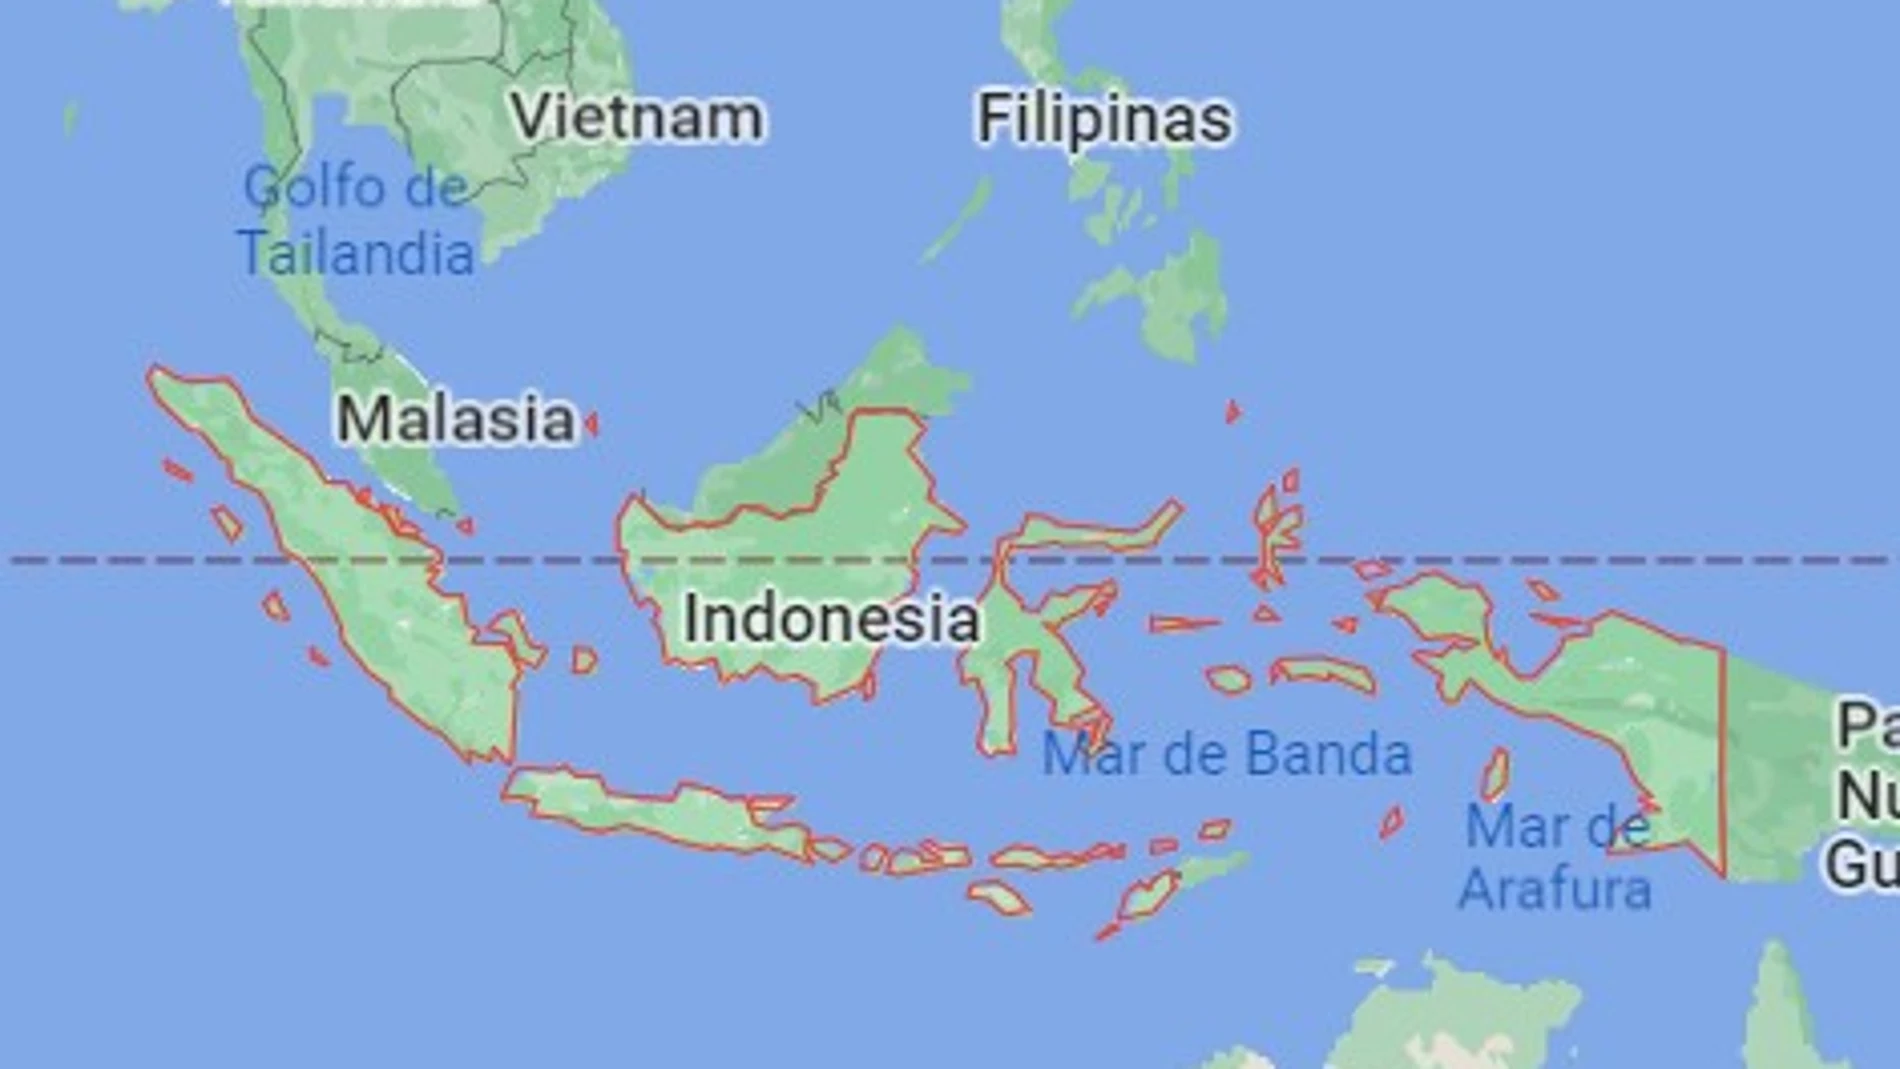 El seísmo se produjo a una profundidad de 109 km y se produjo a unos 440 km al sureste de la ciudad de Ambon, según el EMSC.